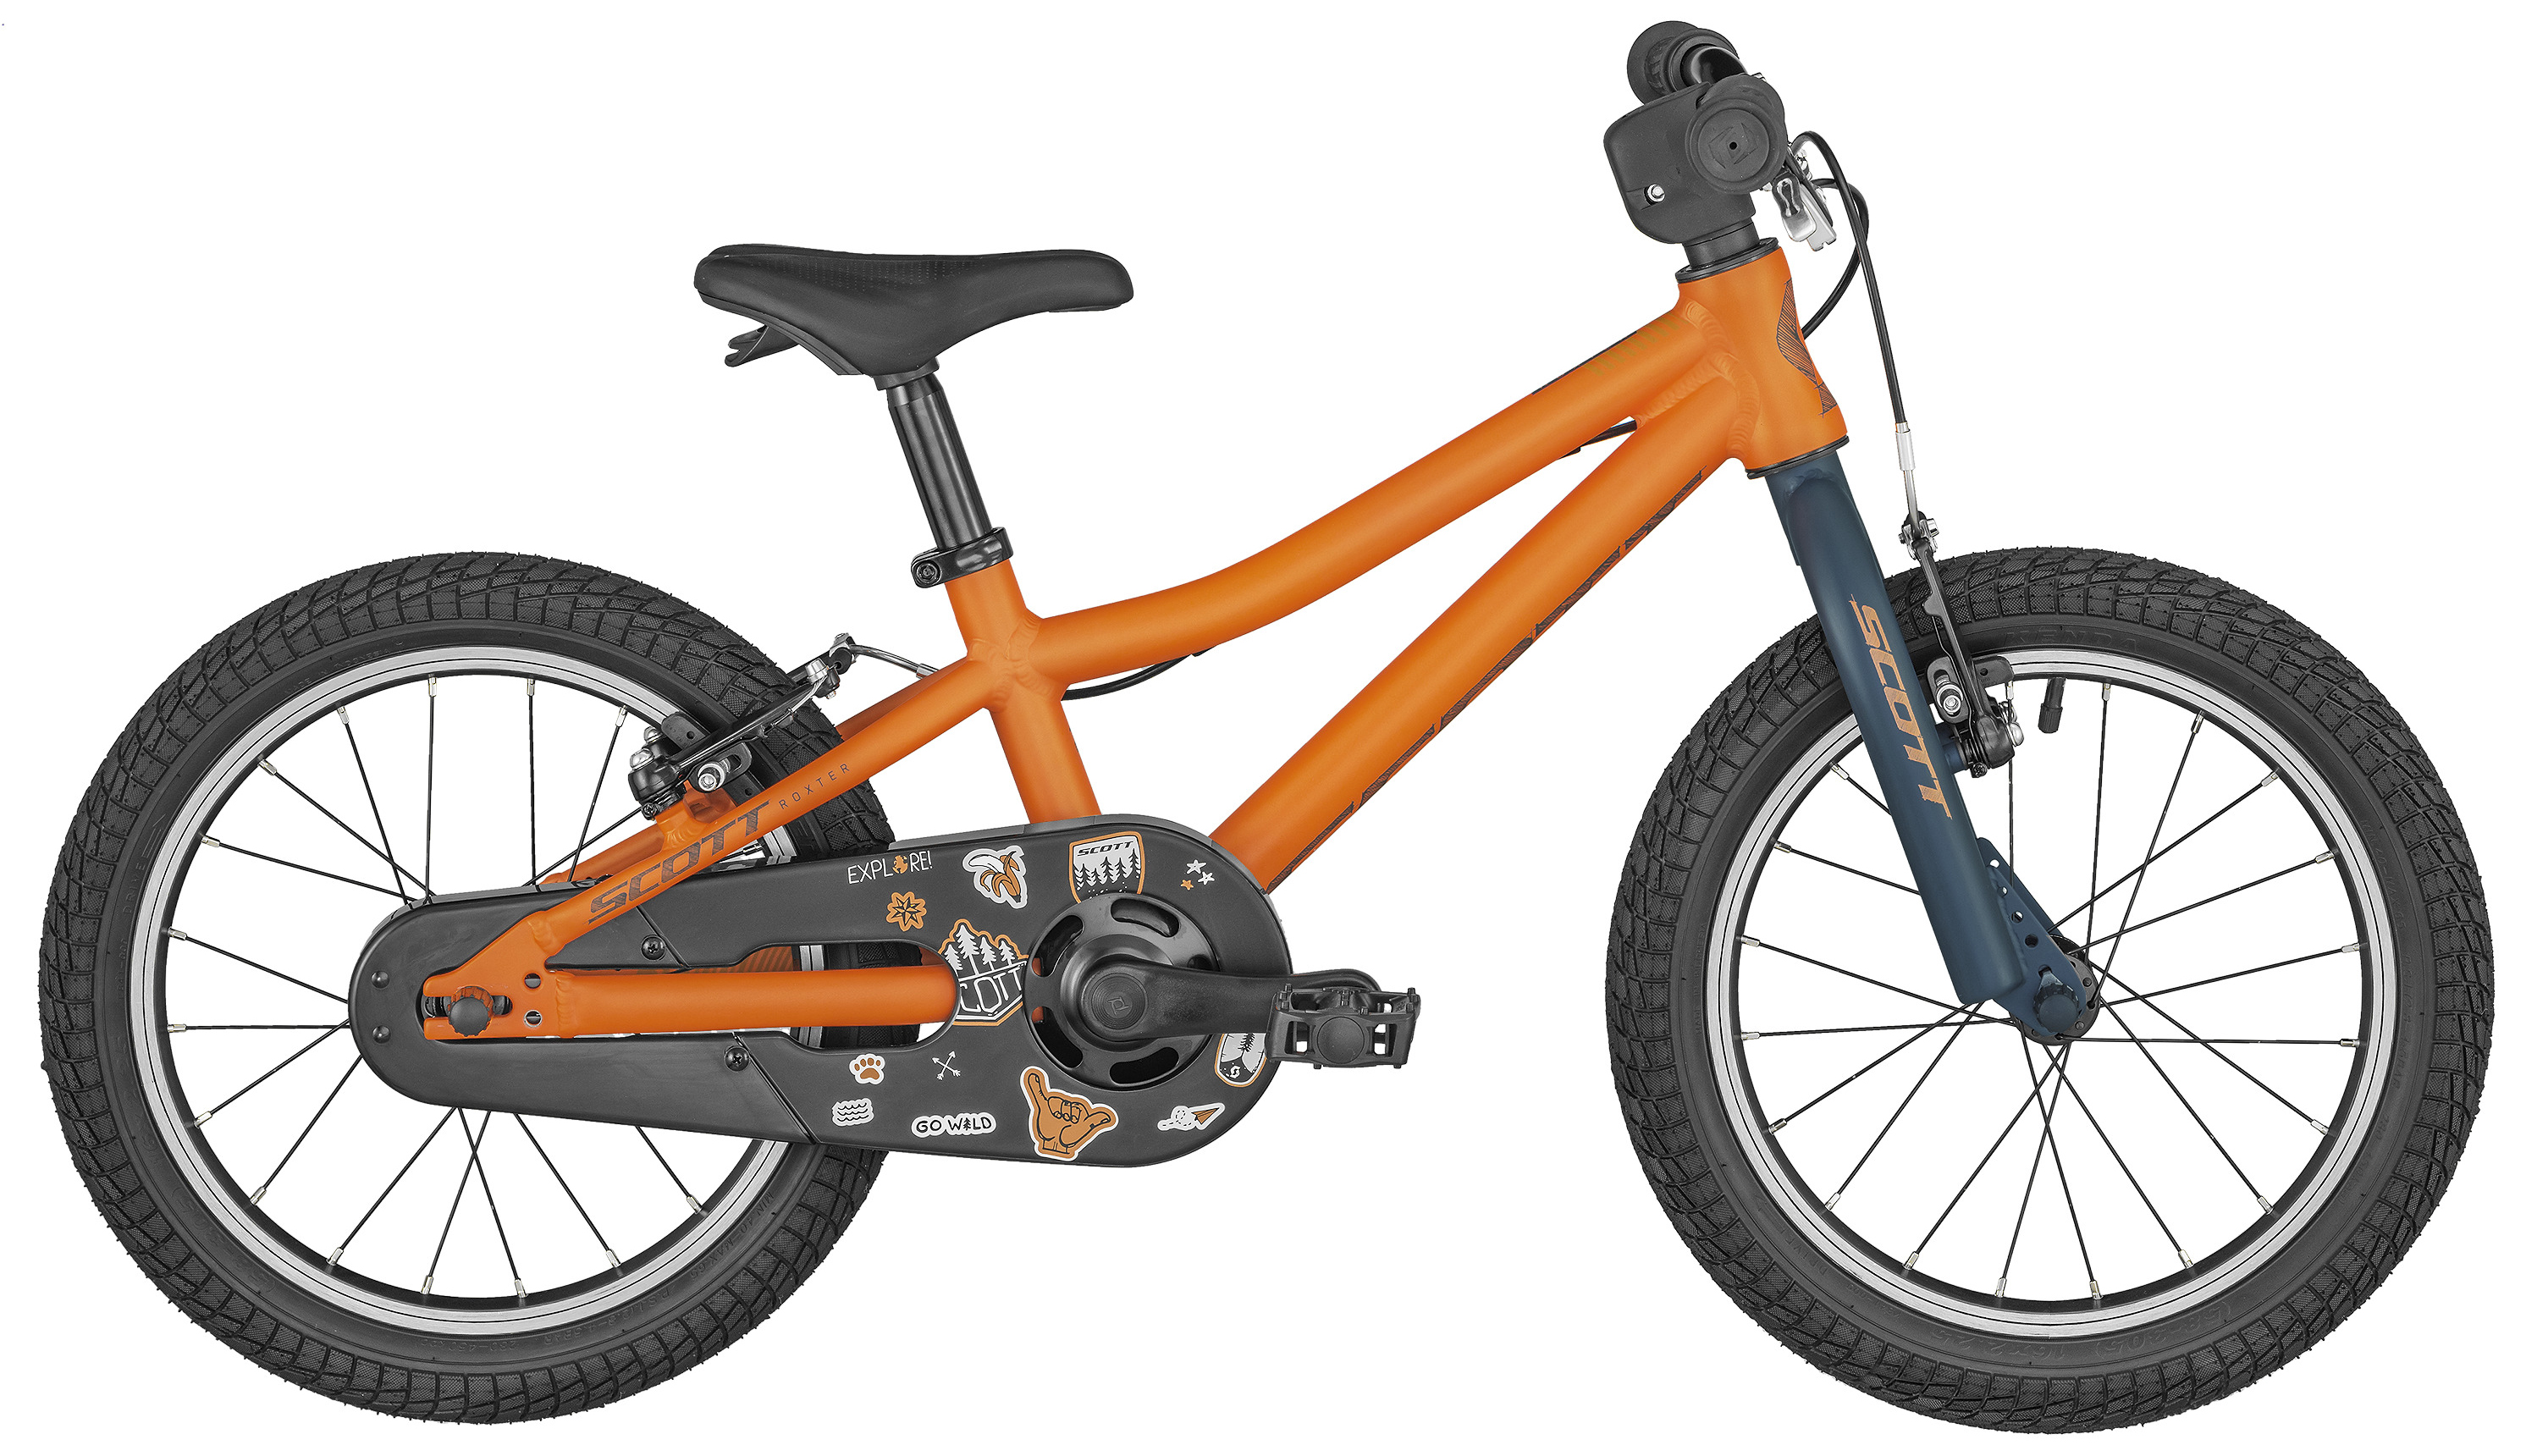  Отзывы о Детском велосипеде Scott Roxter 16 2020